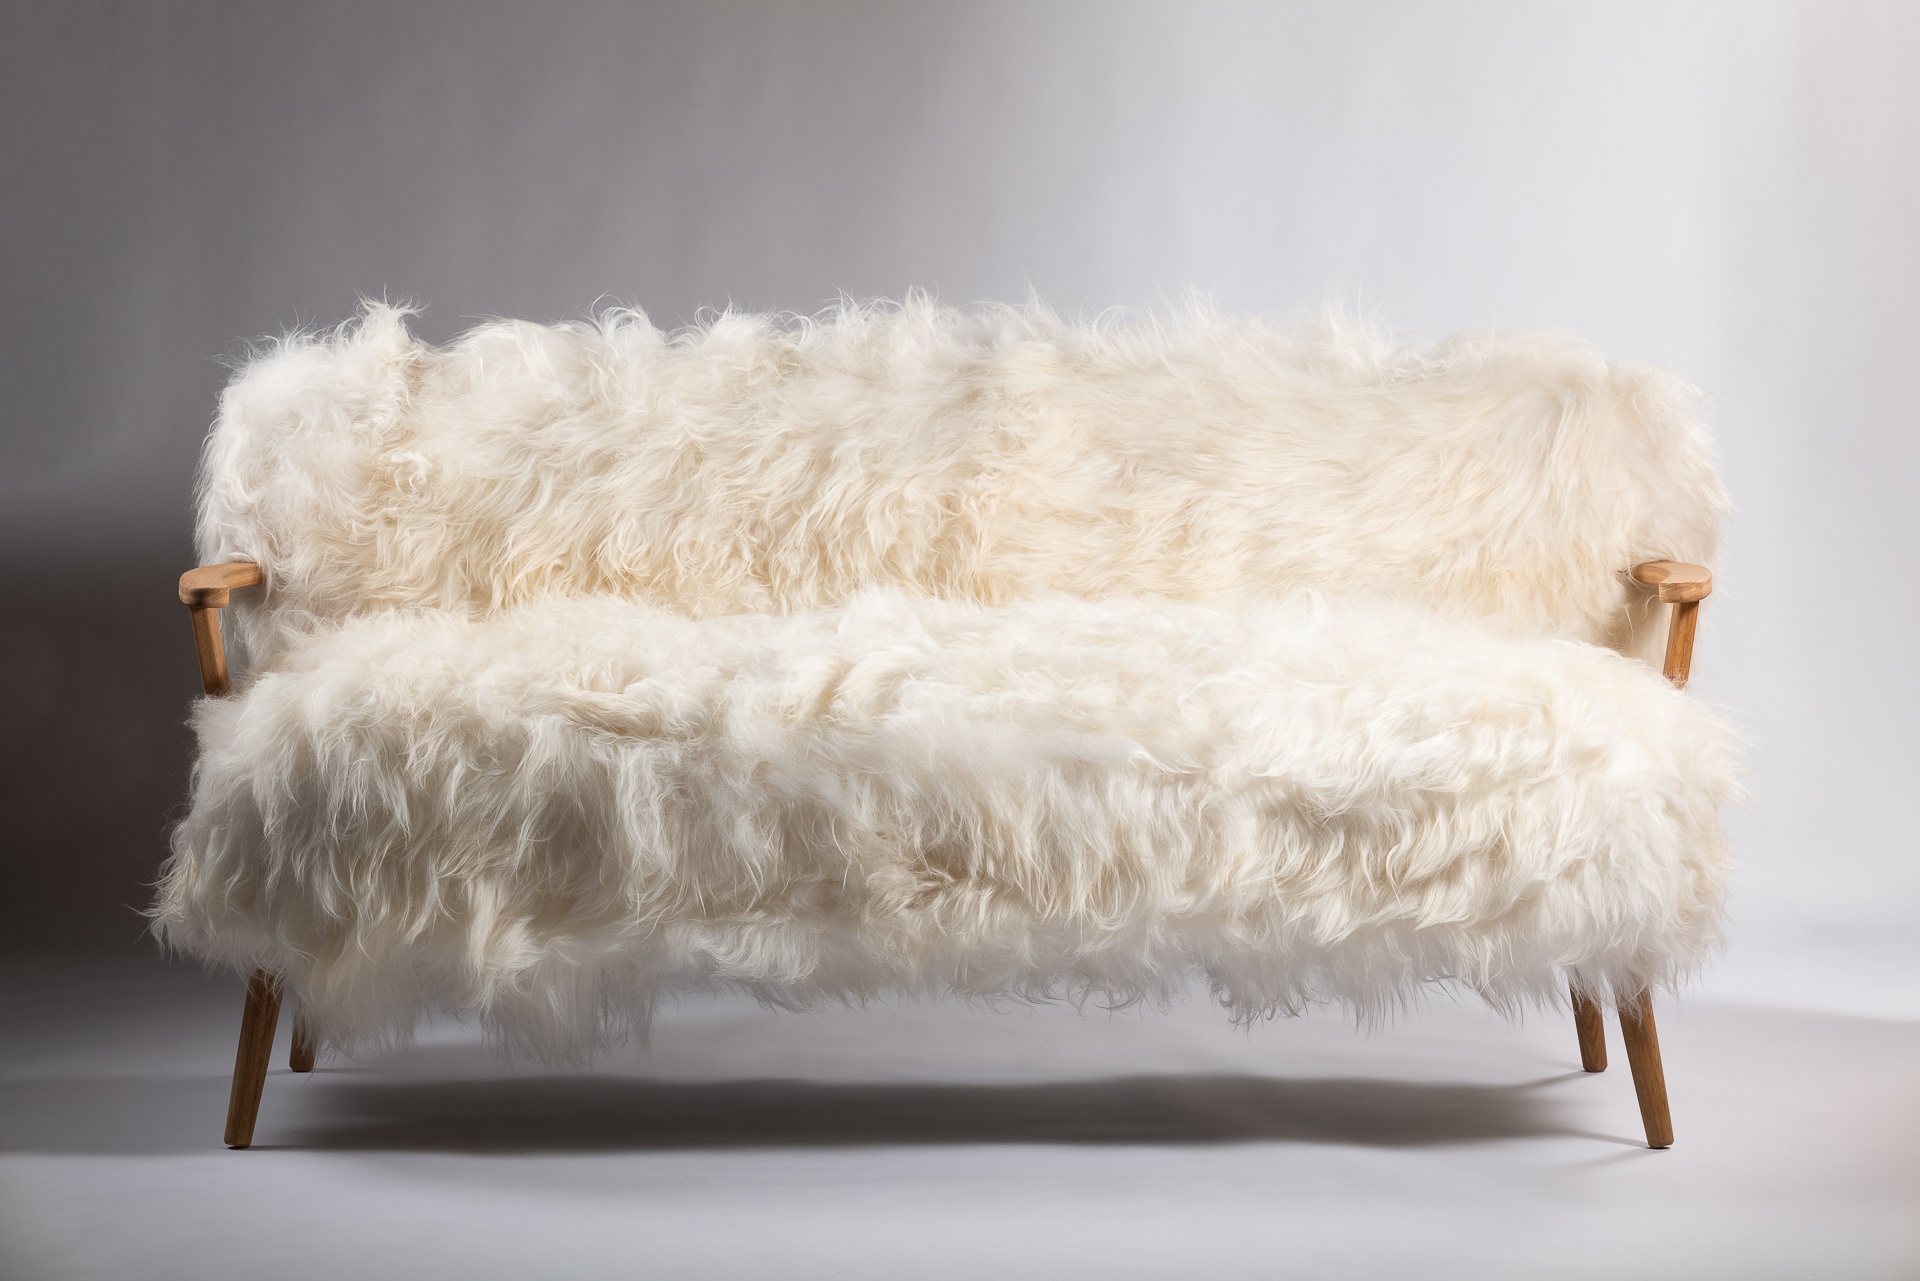 Sofa Alpina : confort luxueux avec un revêtement en mouton, pour des moments de détente inoubliables. Les pieds et les accoudoirs en chêne ajoutent une touche d'élégance naturelle